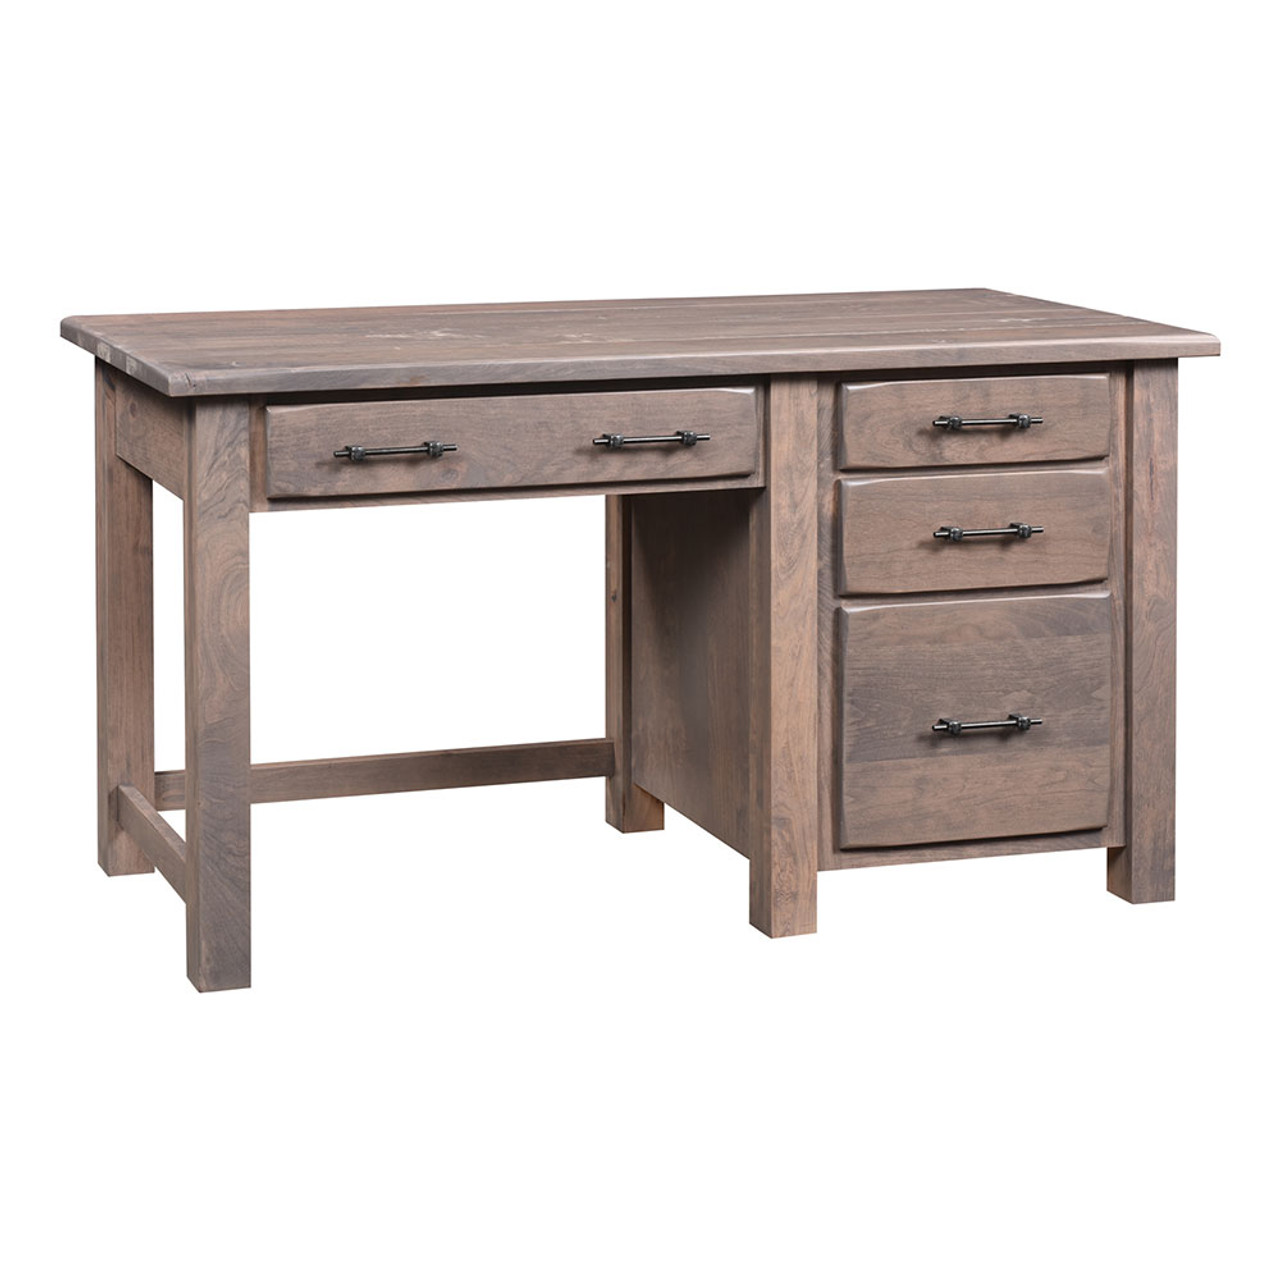 Barn Floor Pedestal Desk | Cherry Valley Furniture in Ohio